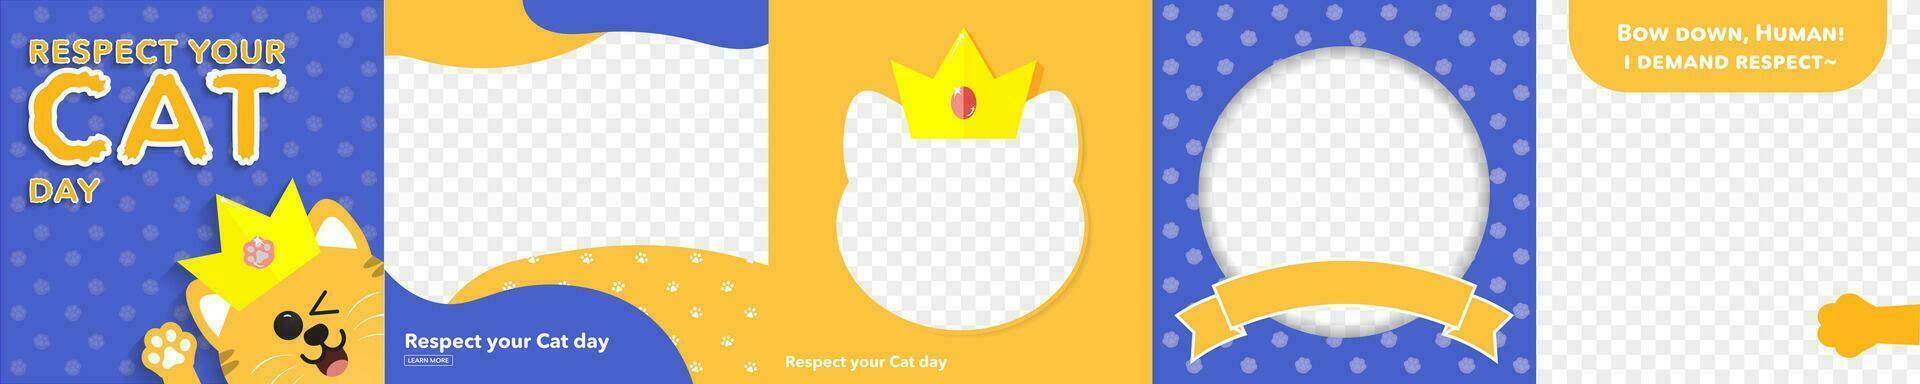 respect uw kat dag groet kaart en kader set. kat-vormig kaders met kroon. bewerkbare vector illustratie. eps 10.